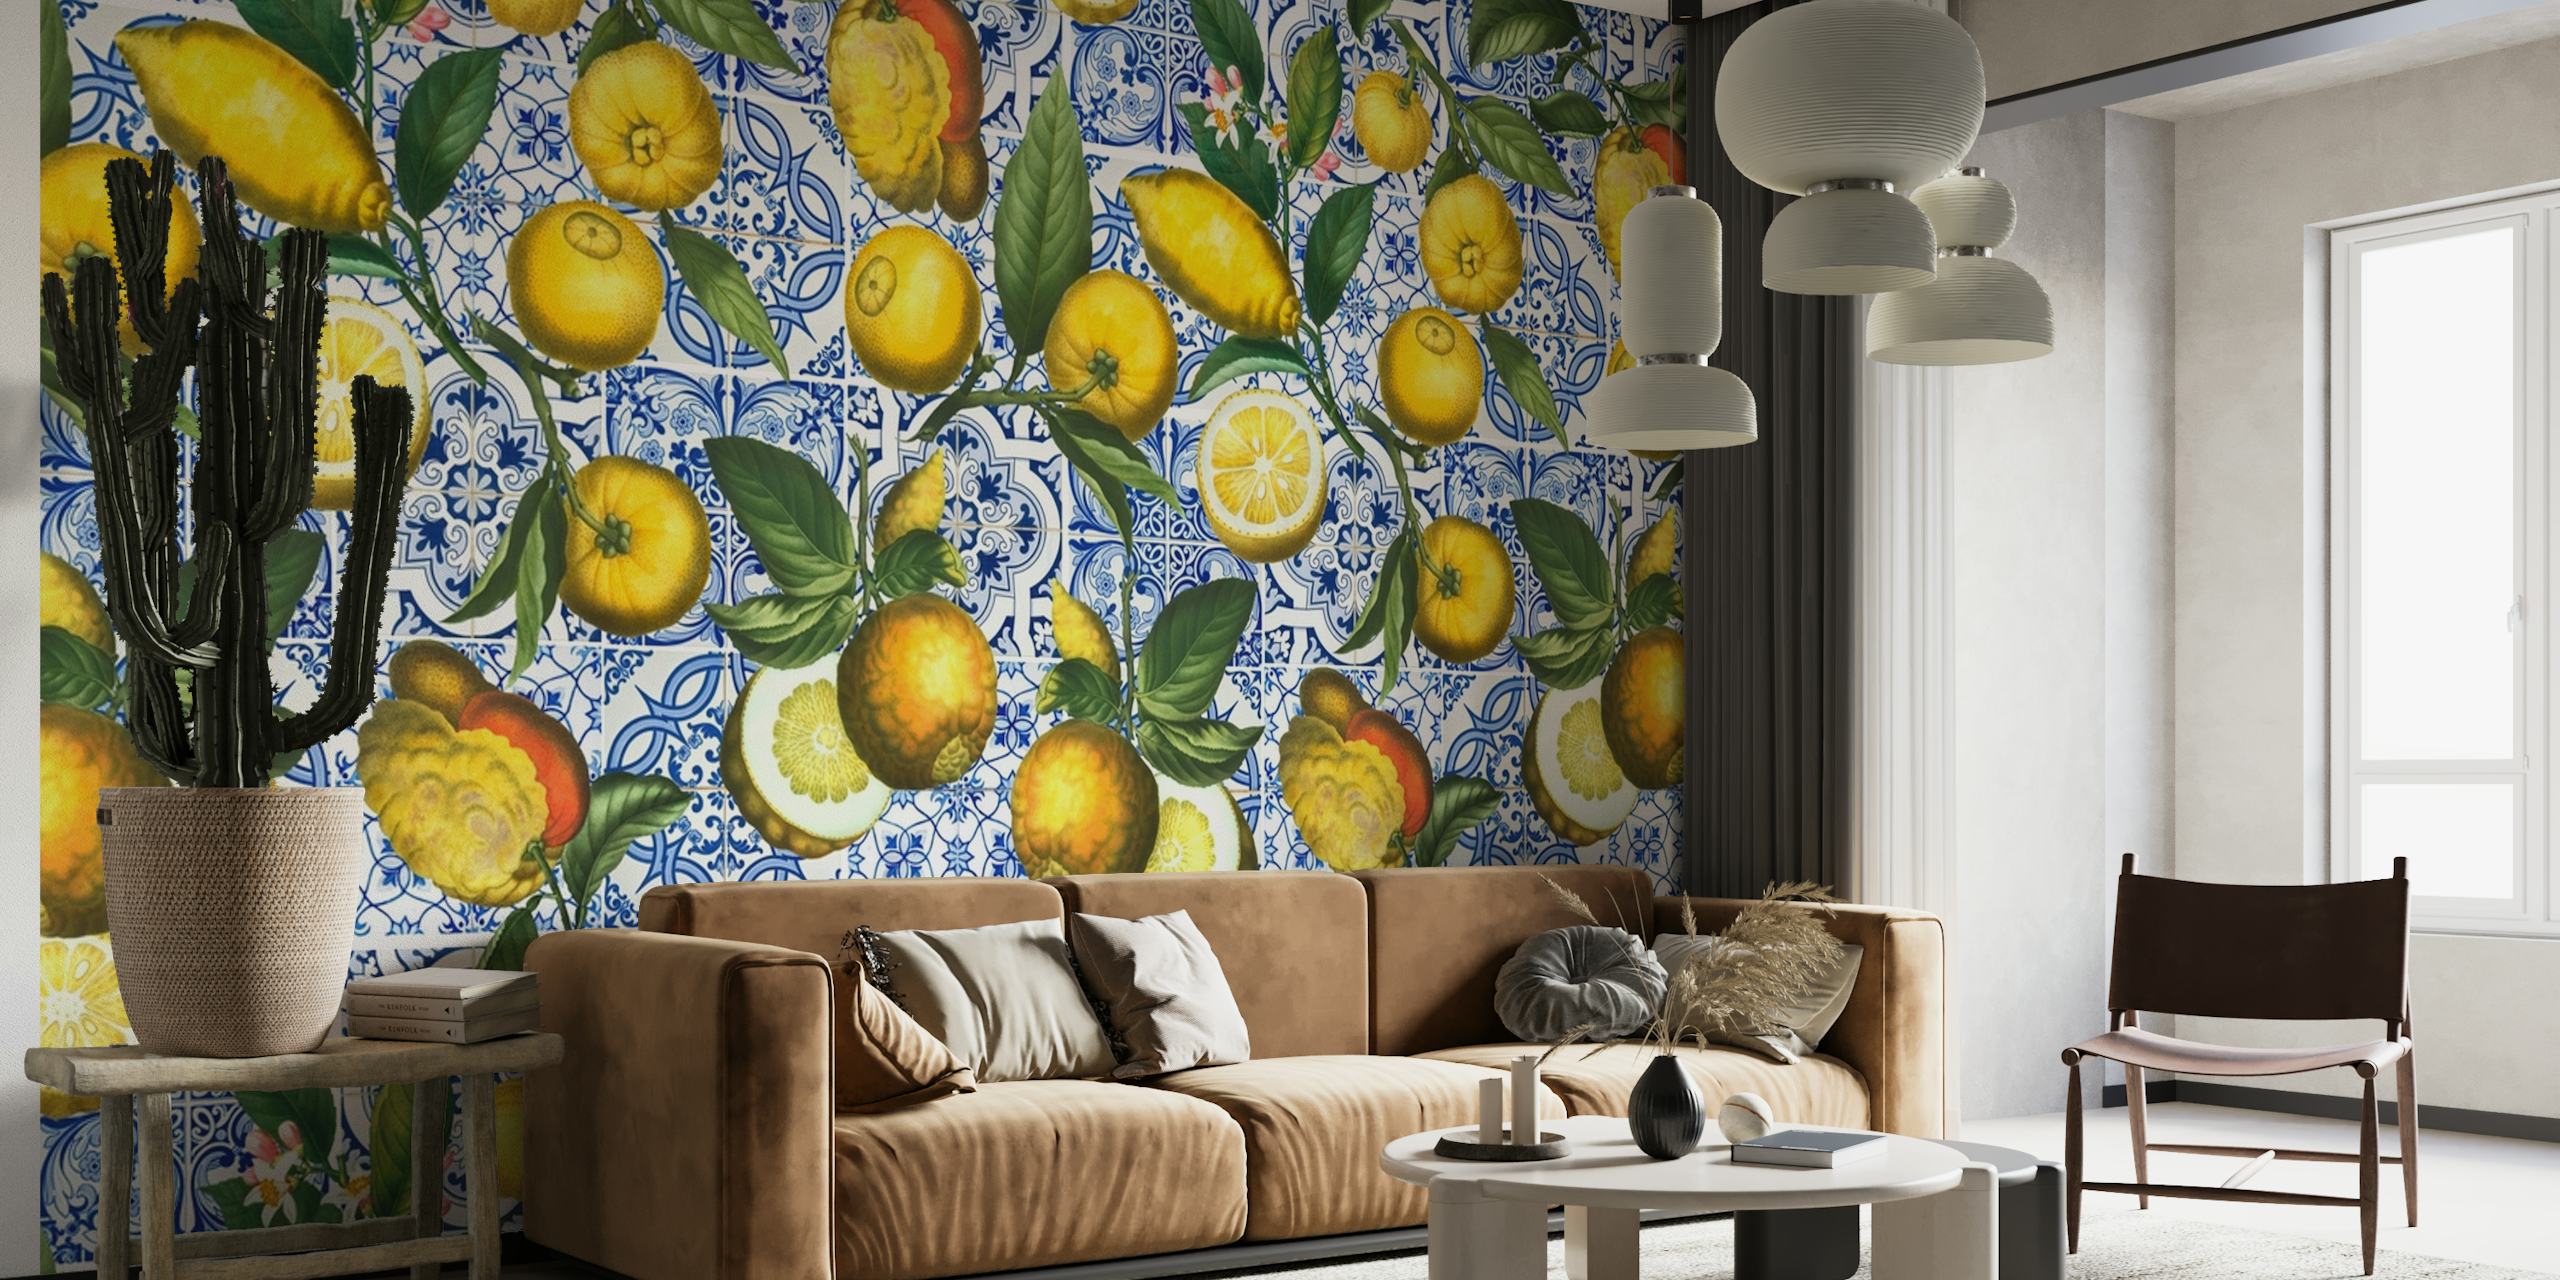 Välimerellinen sitruuna- ja laattakuvioinen seinämaalaus